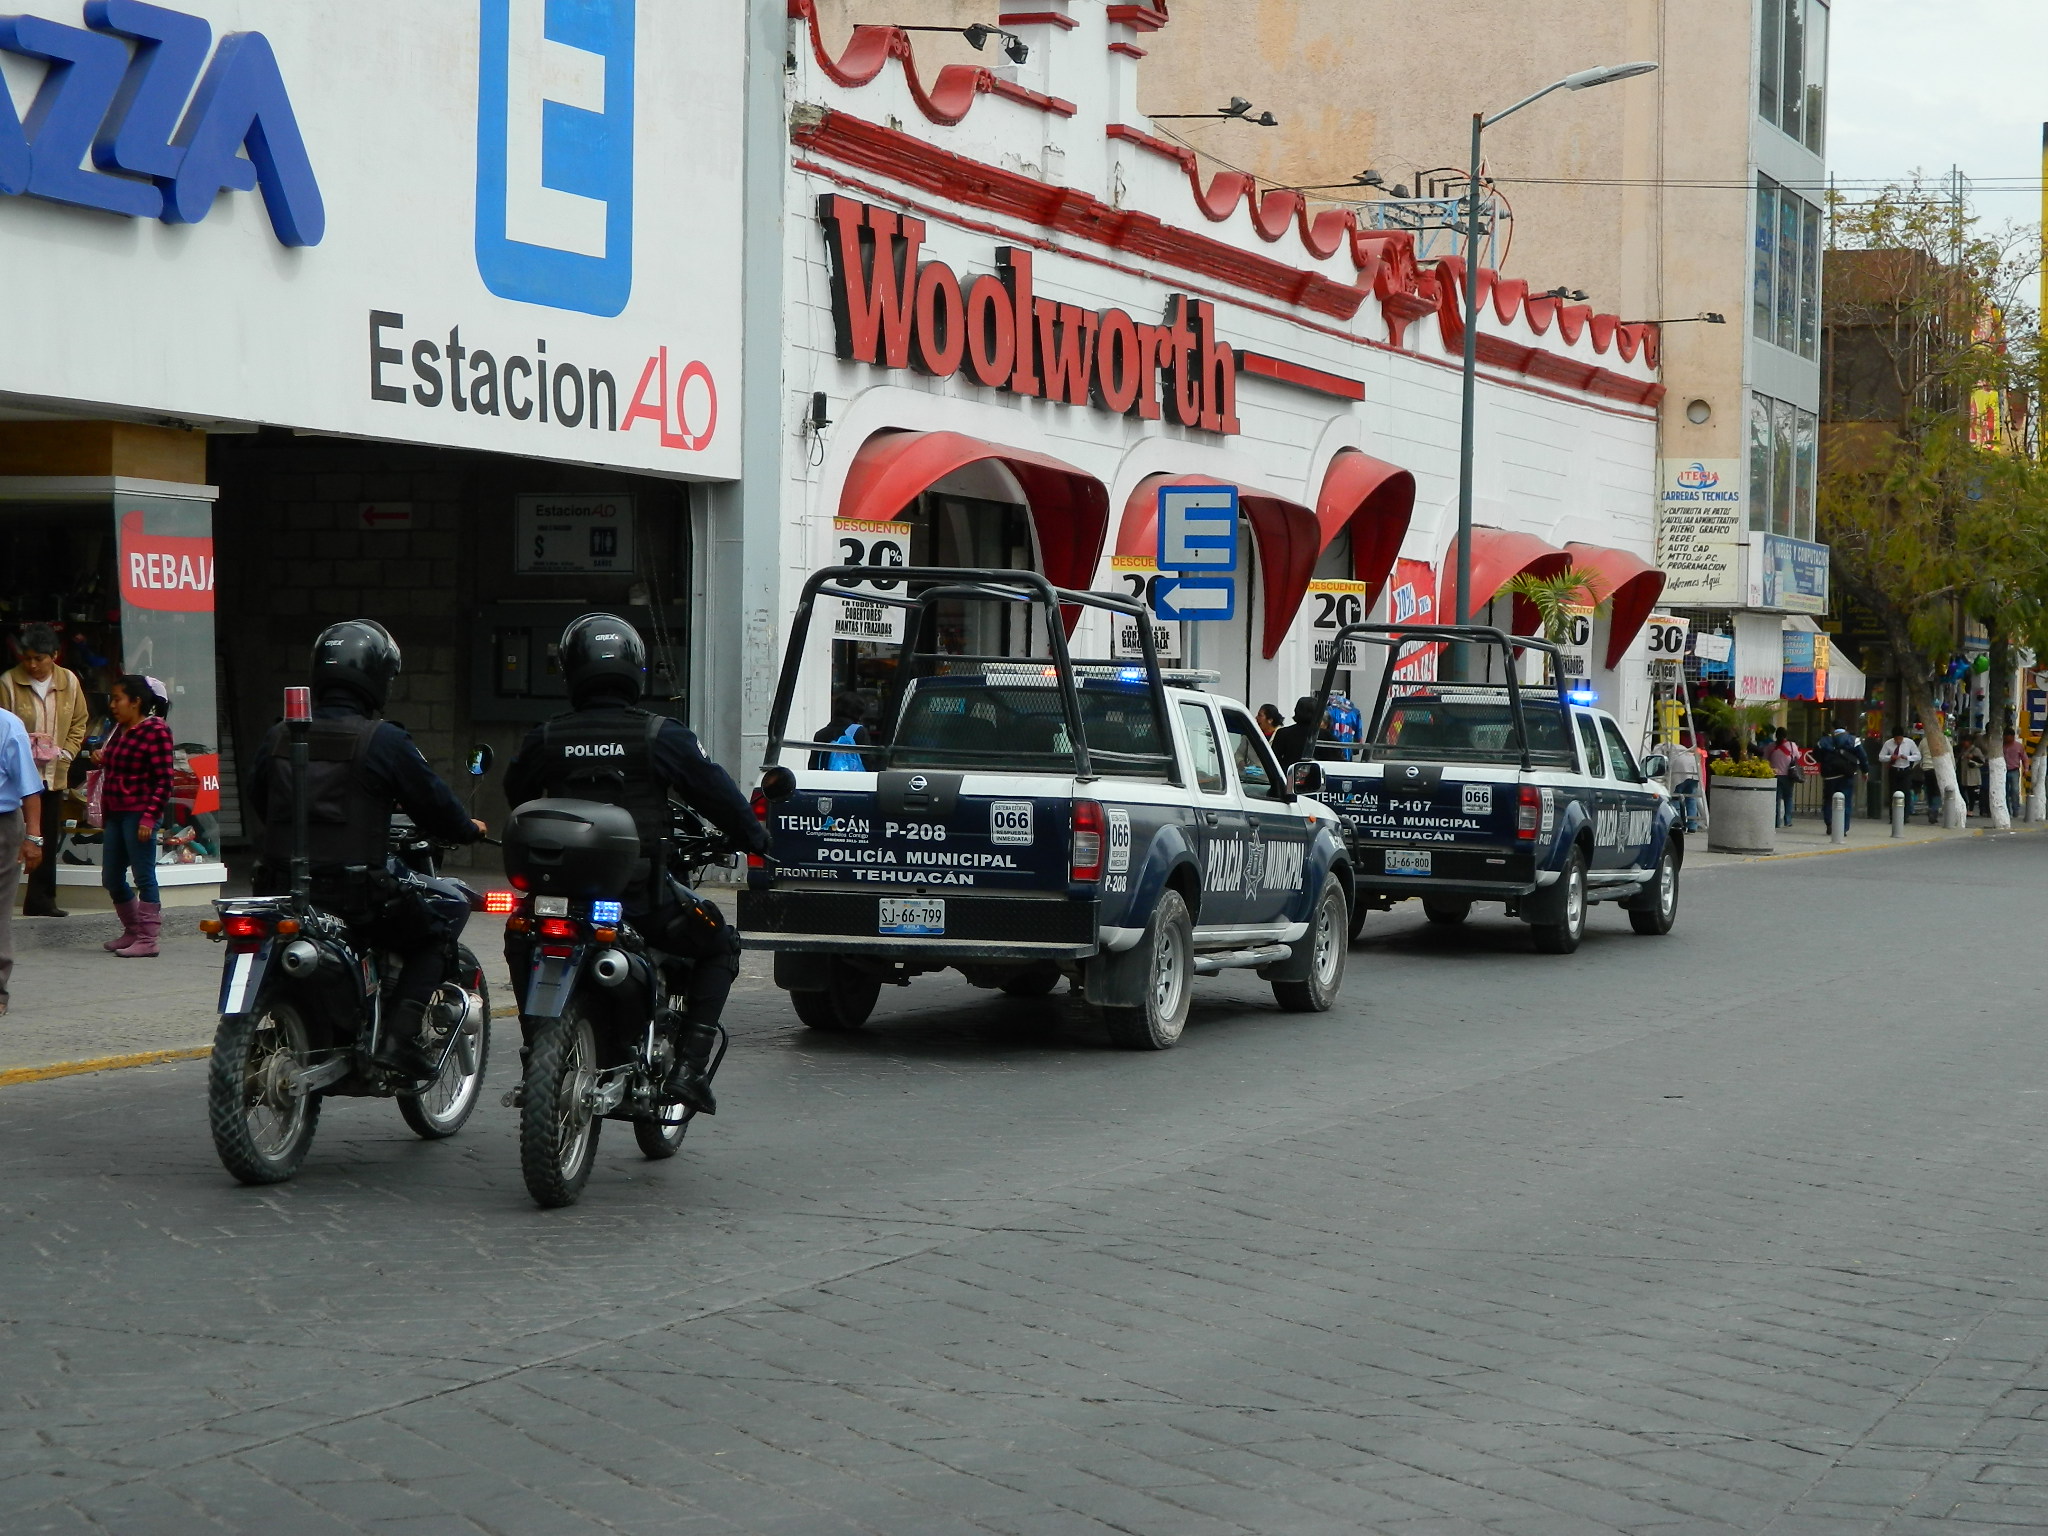 Comuna de Tehuacán pagó gastos médicos de policía baleado: Síndico